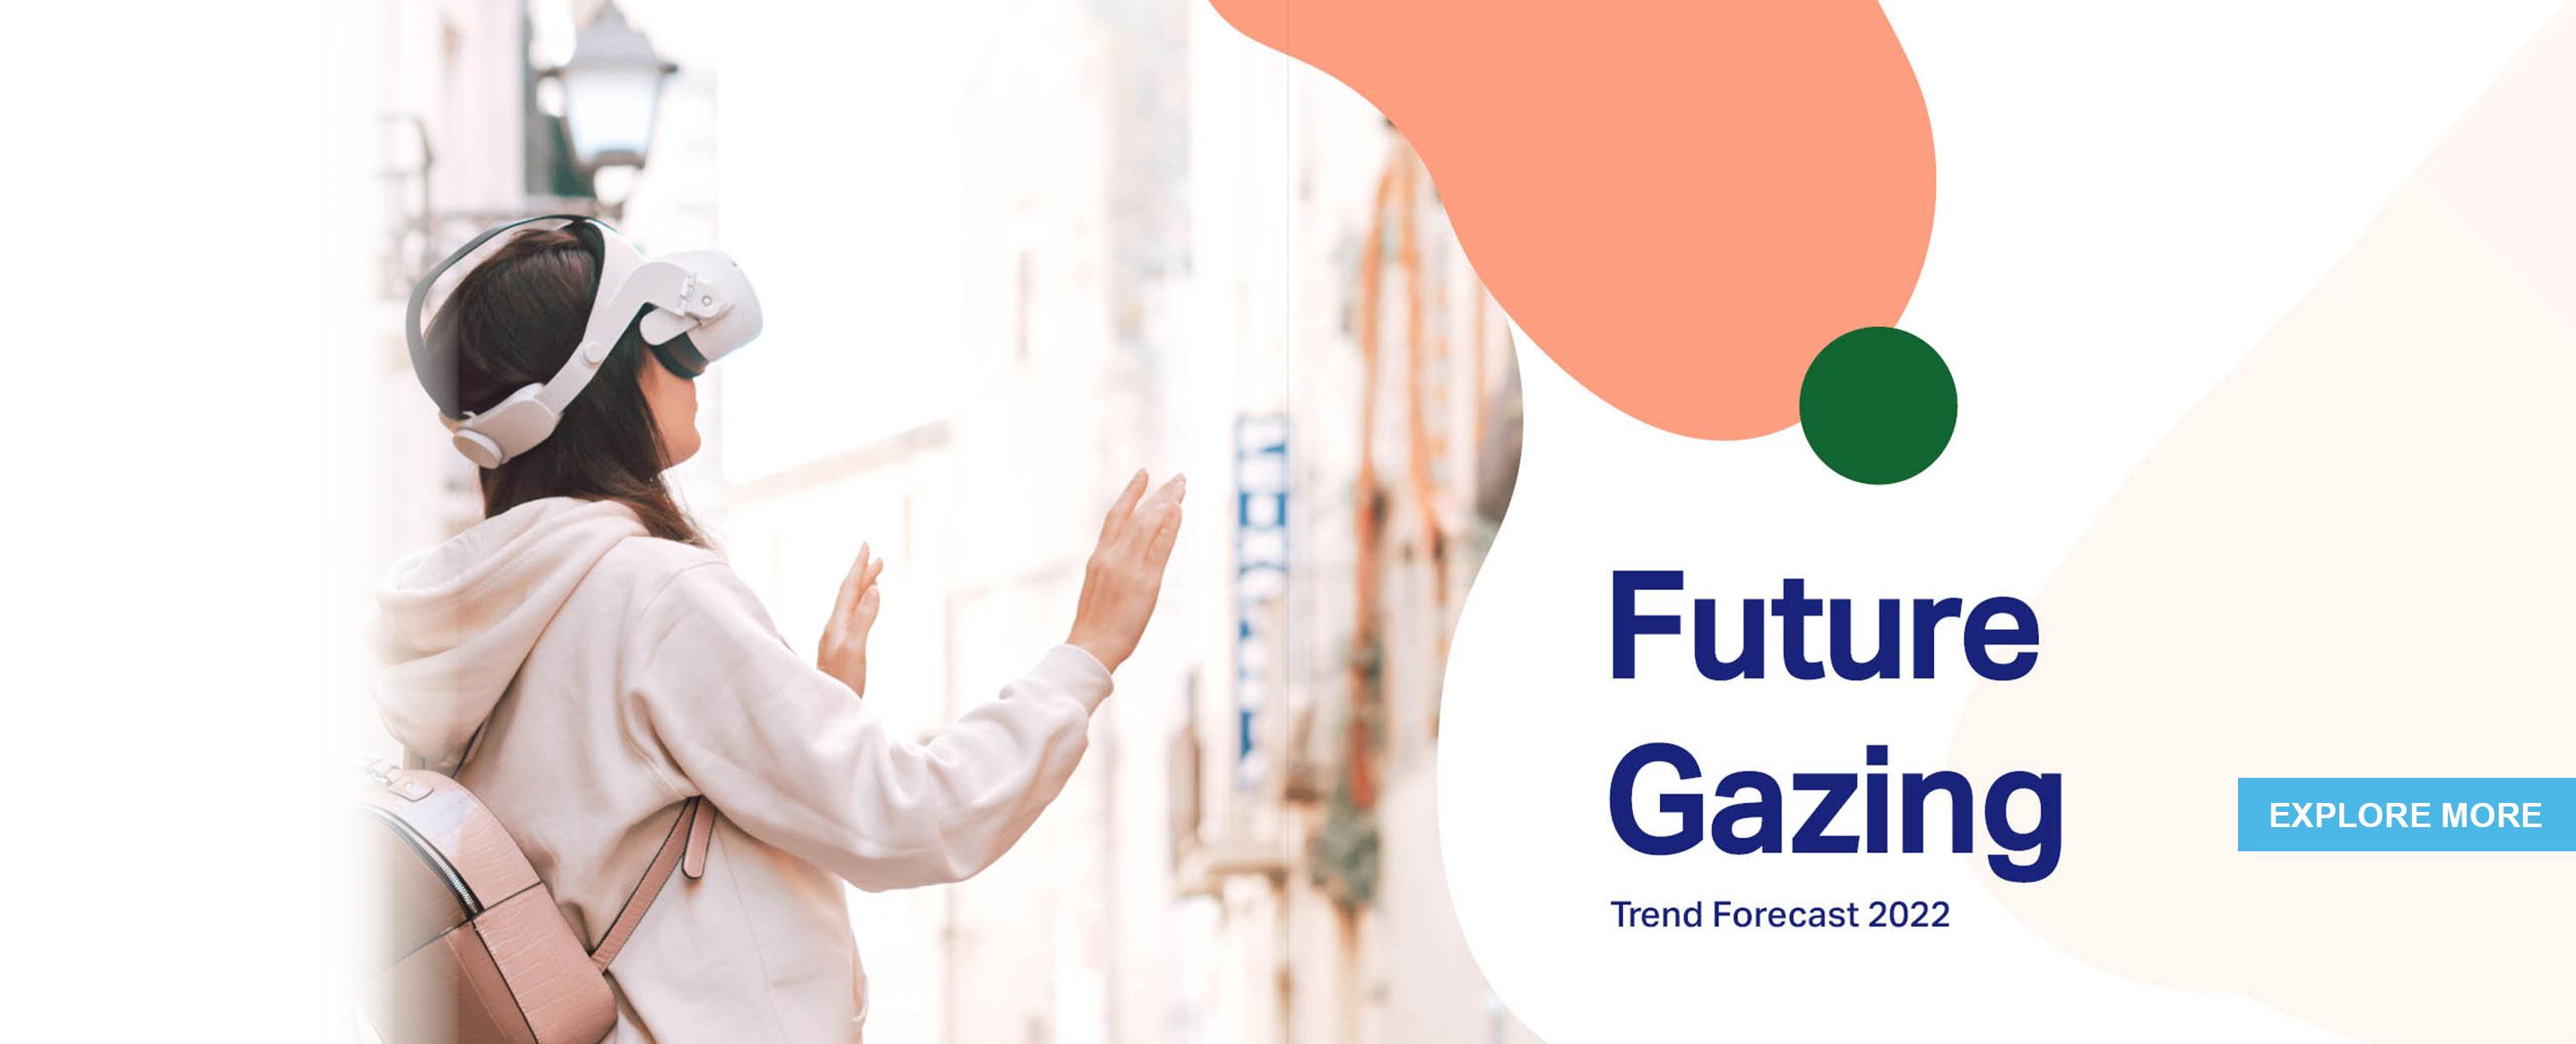 Future Gazing - Tata Elxsi Trends Forecast 2022